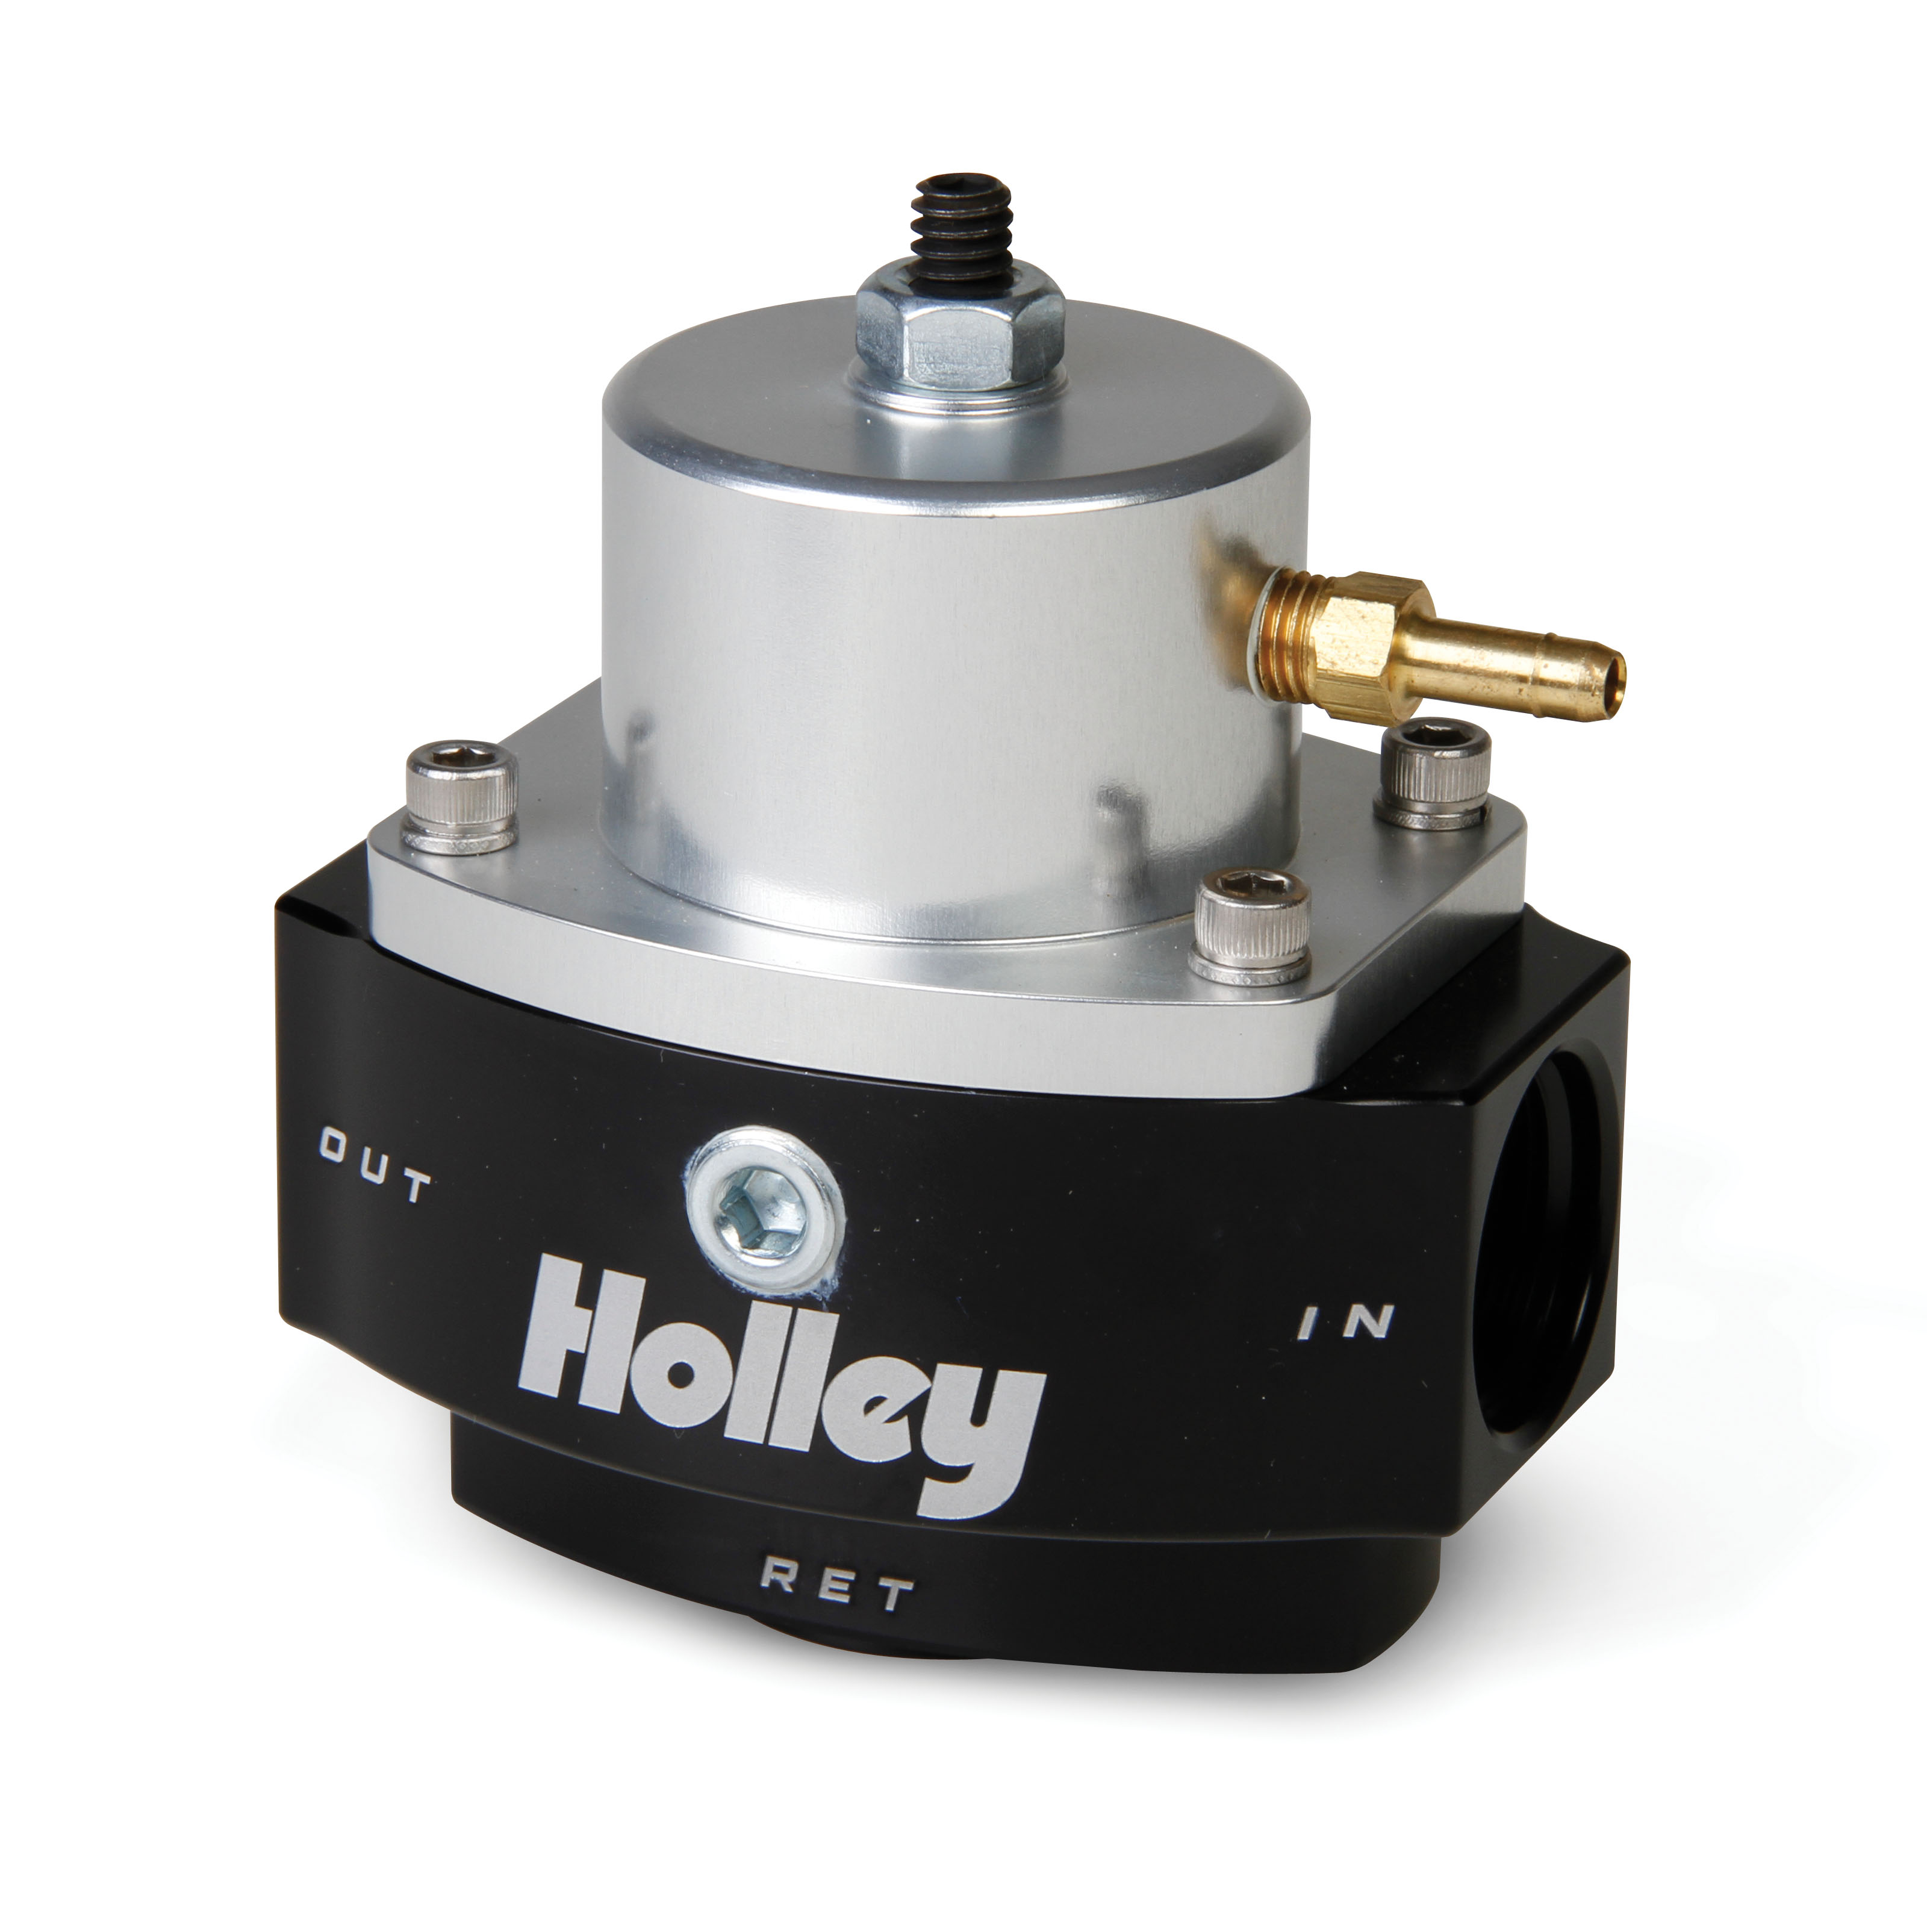 Holley 2 Port Ultra Dominator Fuel Pressure Regulator - Adjustable 40-100 PSI